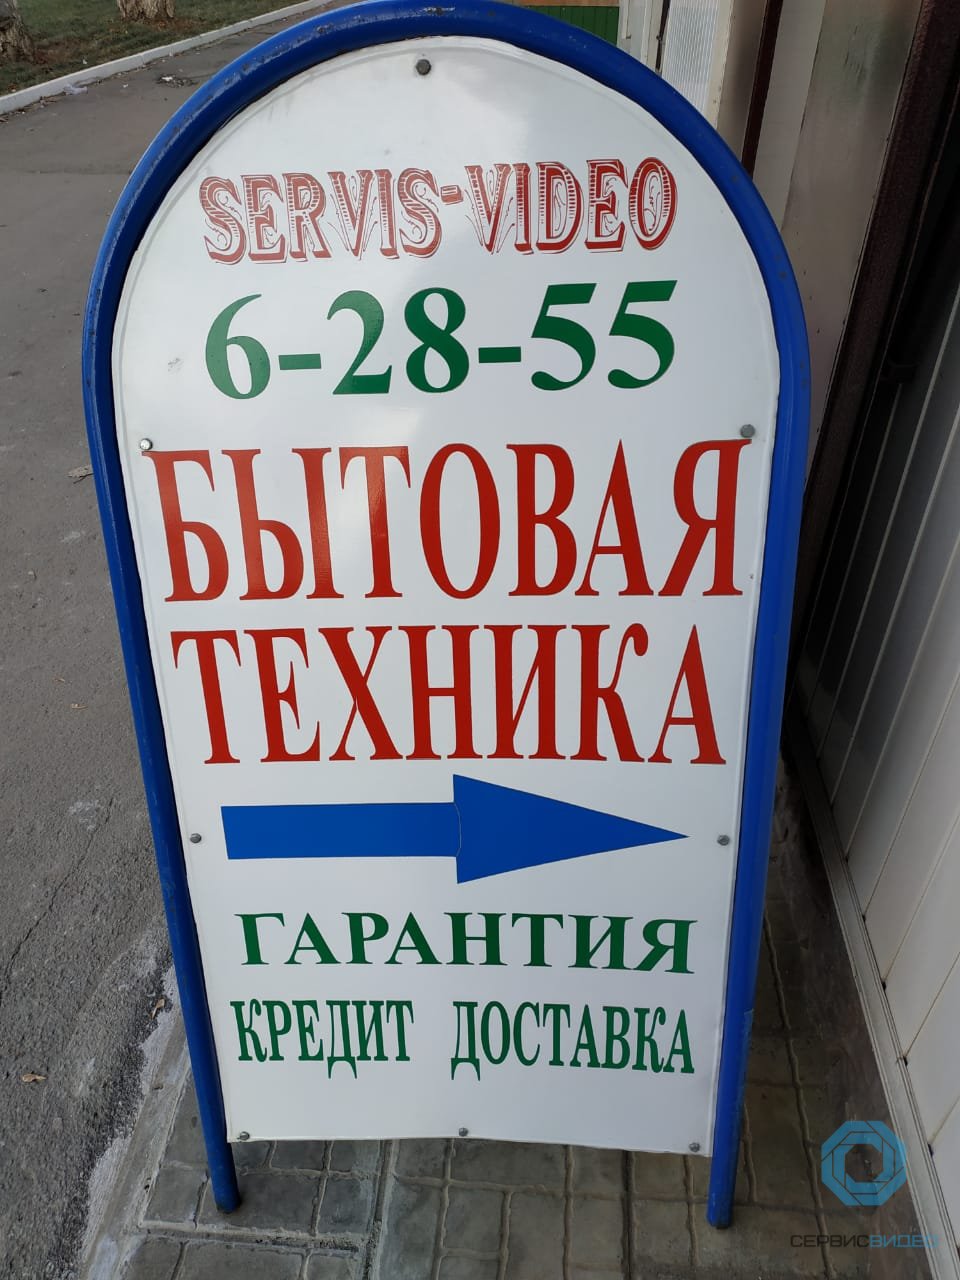 Сервис-Видео